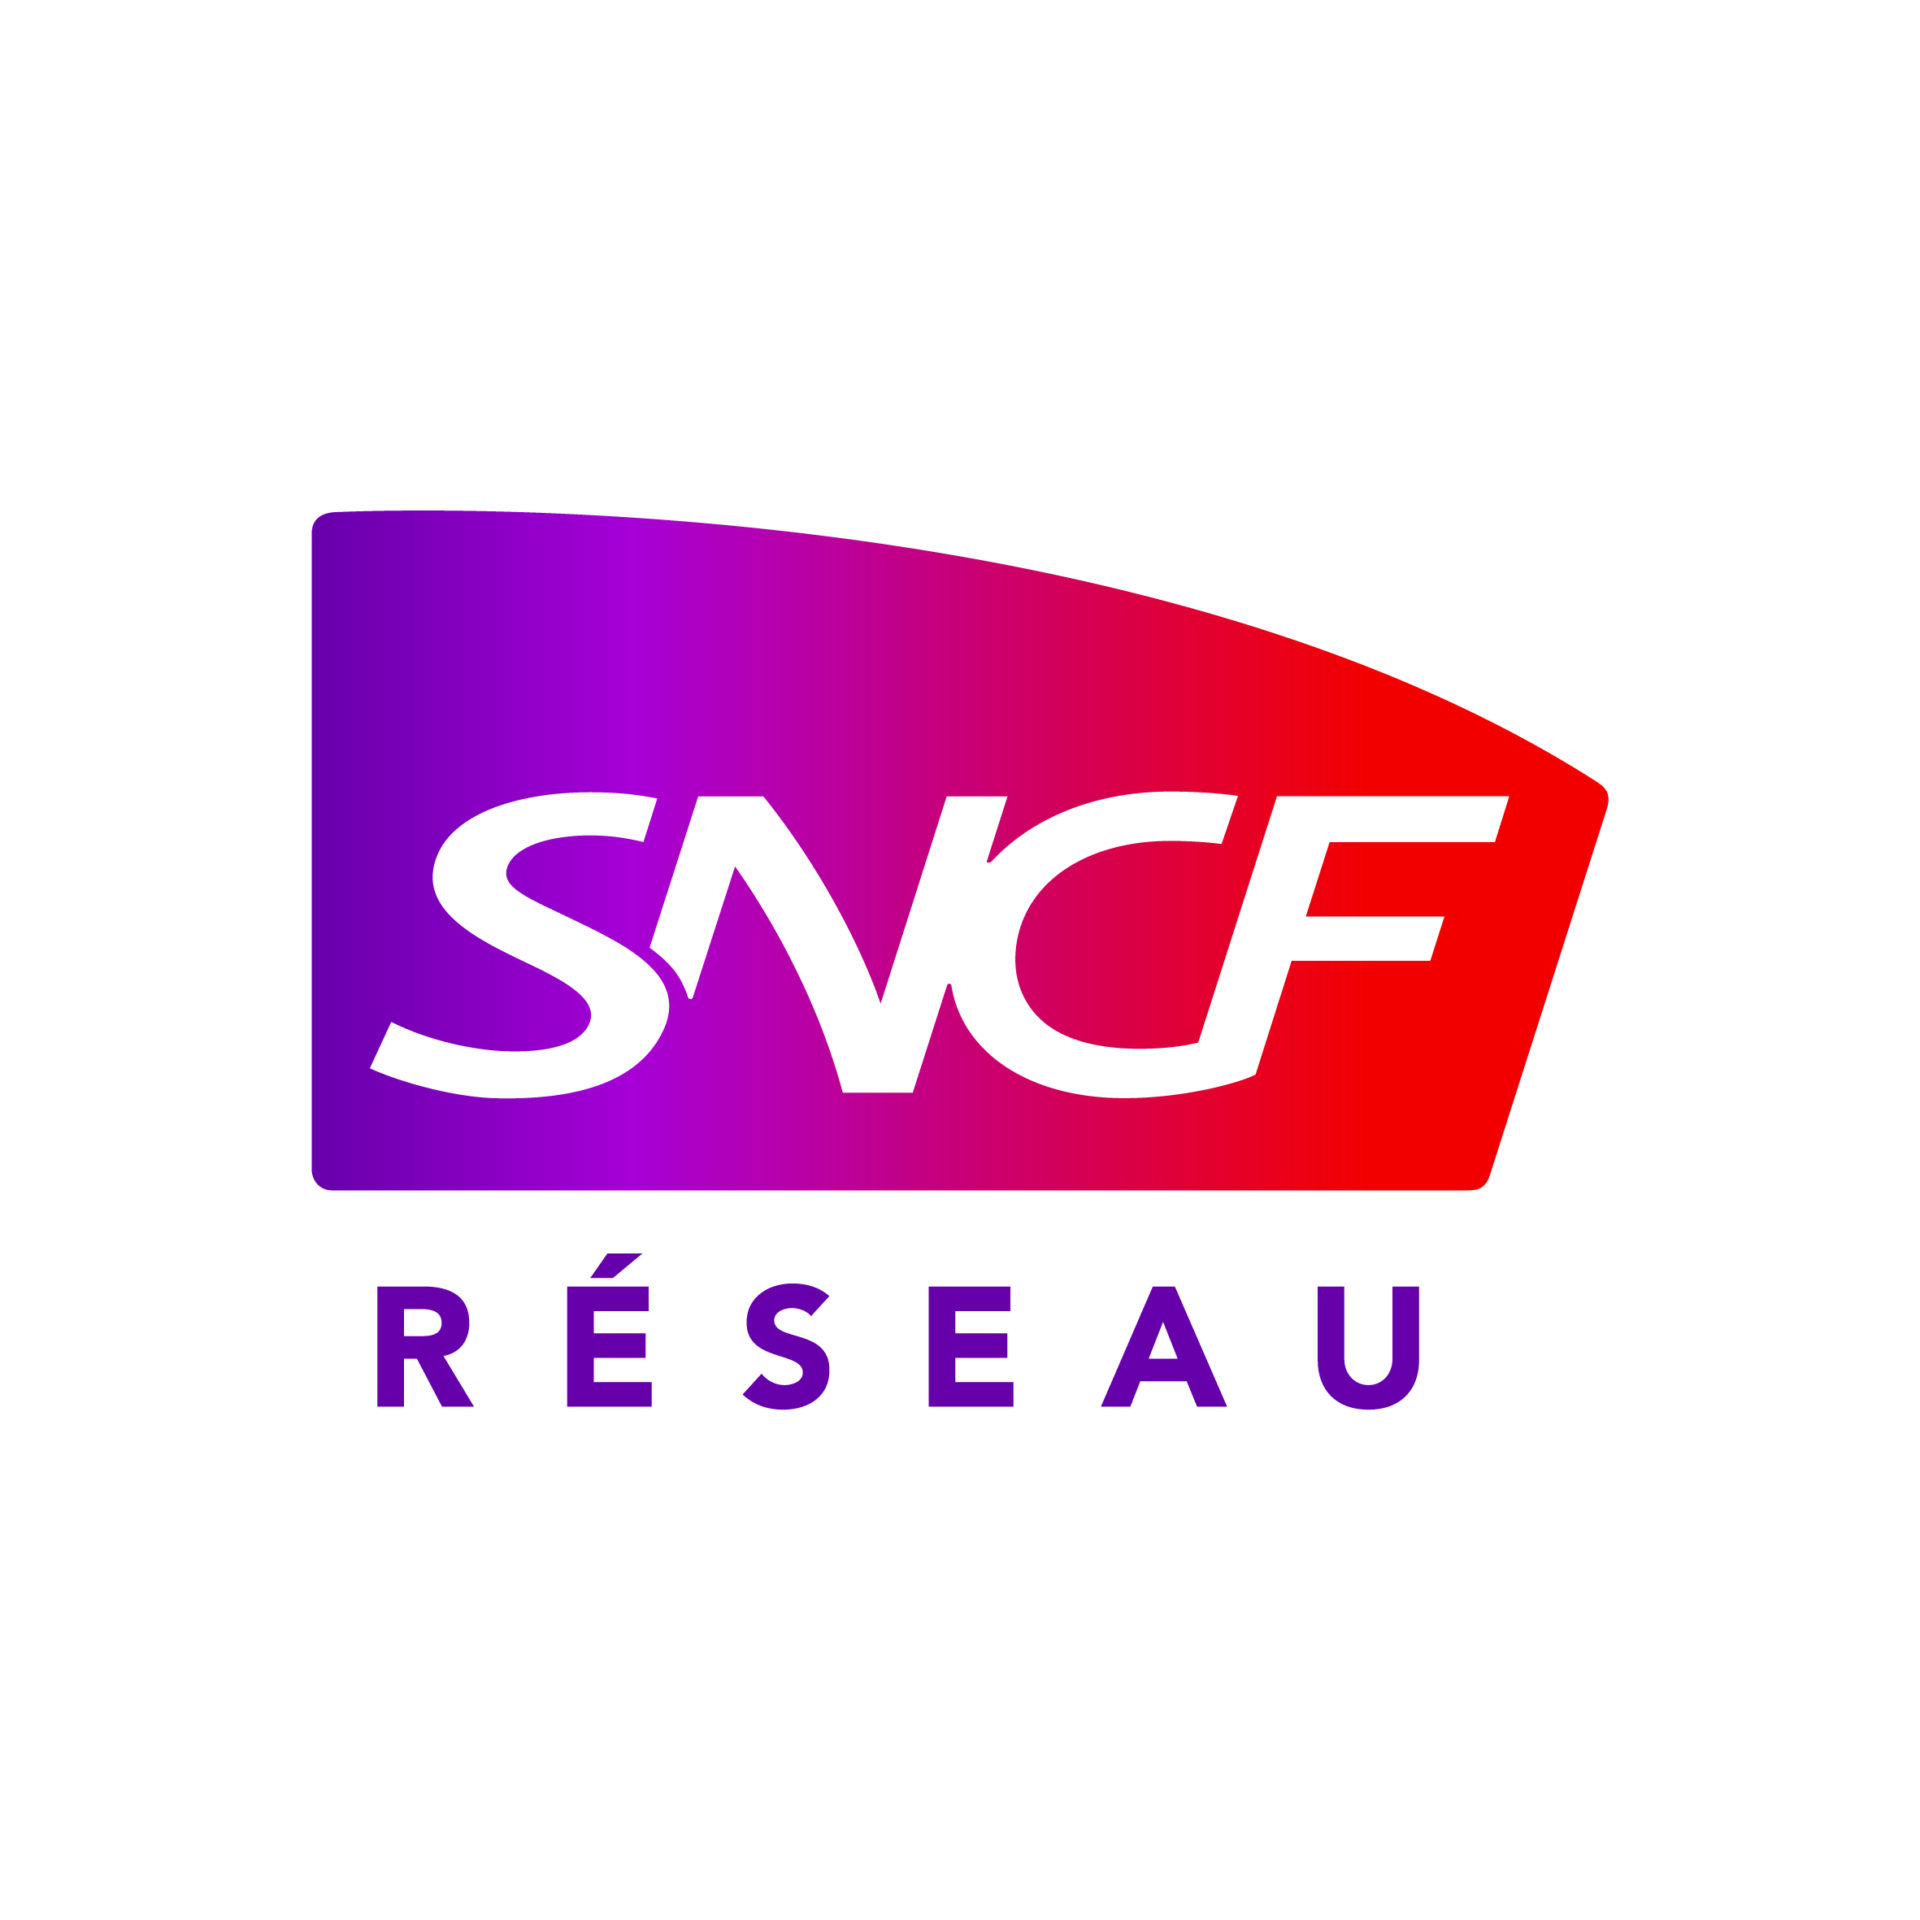 SNCF Réseau: Austausch zuverlässiger Daten und bewährter Verfahren zur Optimierung des Managements des französischen Schienennetzes